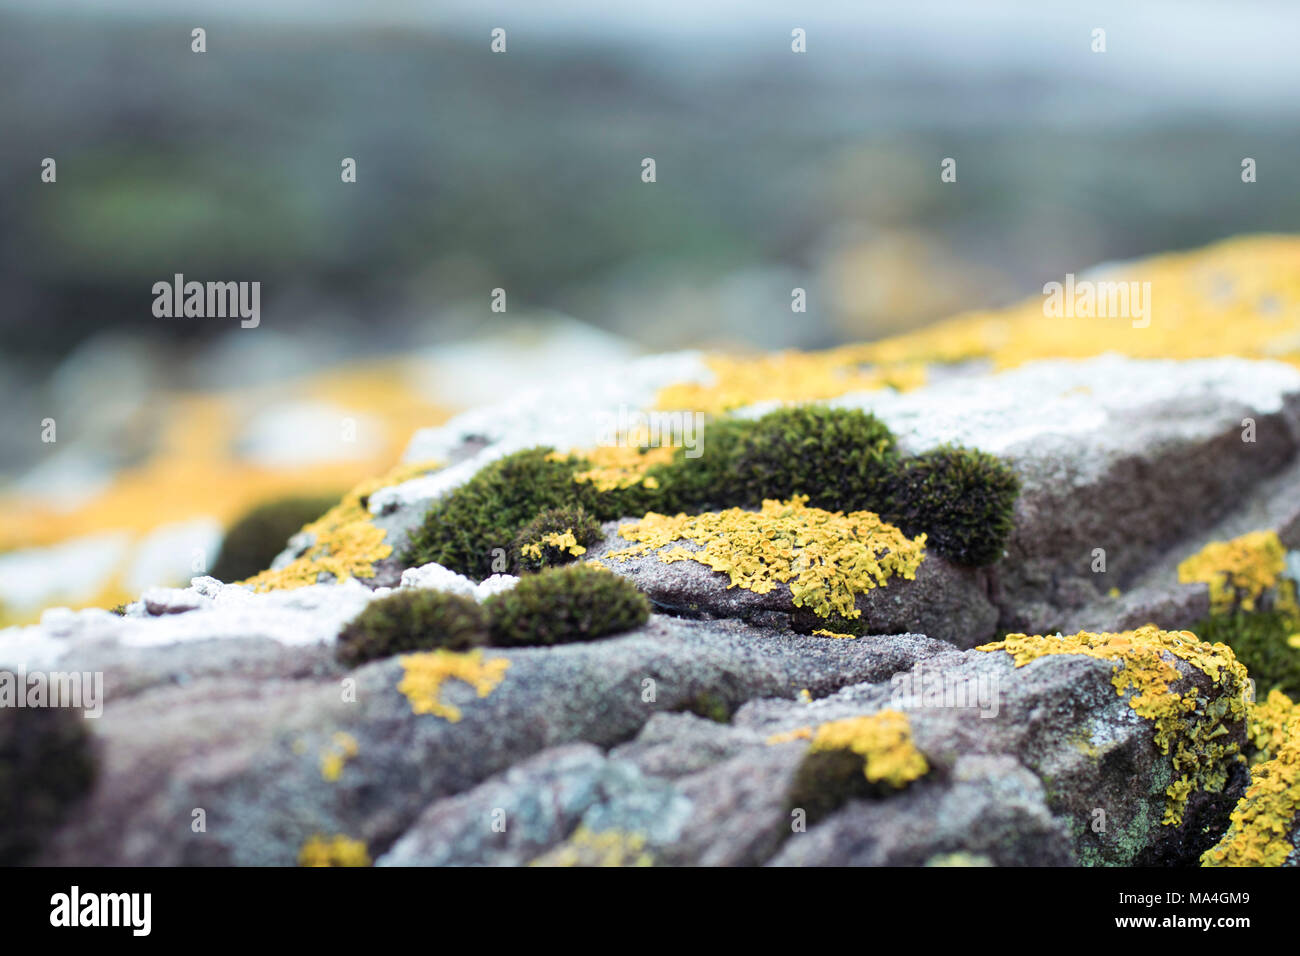 Meer Felsen bedeckt in Flechten, Moos, Algen, Nahaufnahme, Fotografie, Hintergrund, grüne und gelbe Töne Stockfoto